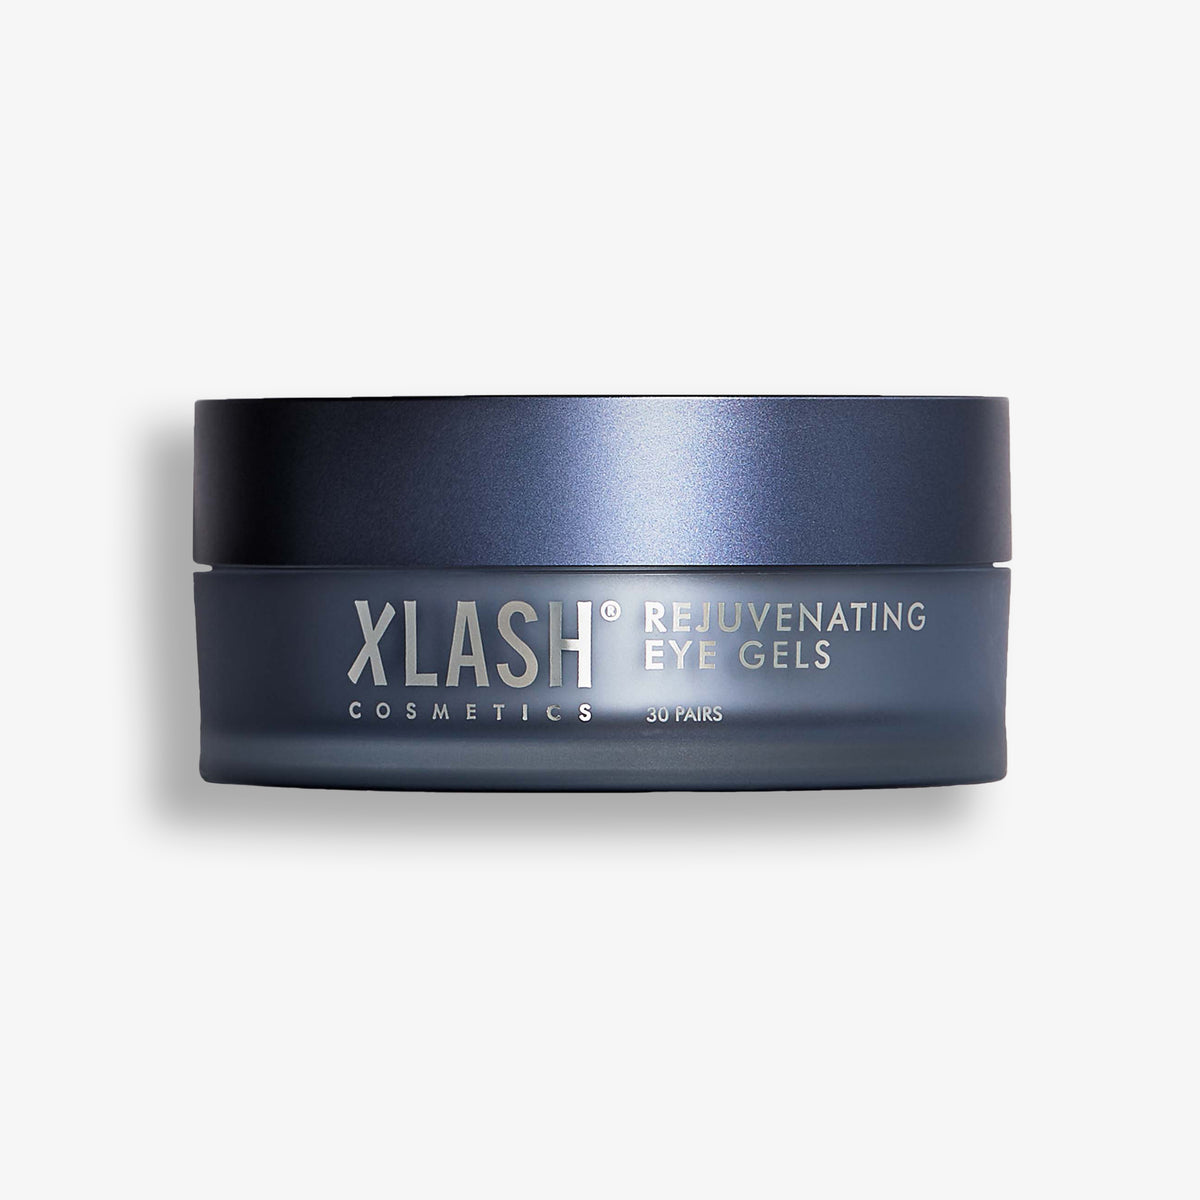 XLASH Build-a-Box + FREE Eyelash Serum Trial